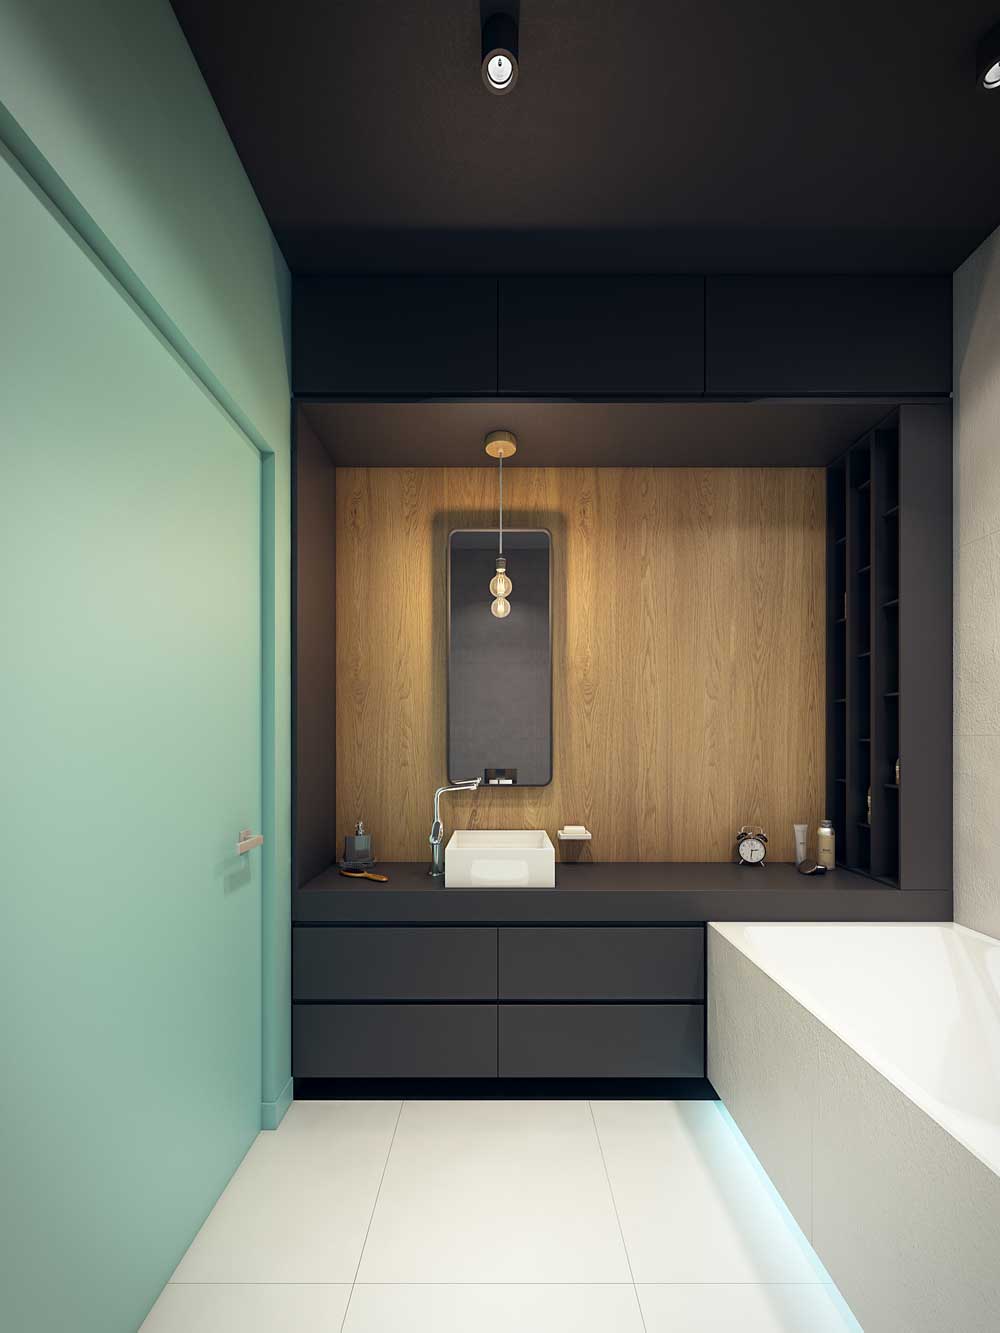 Bathroom design 6 sq m zoning color